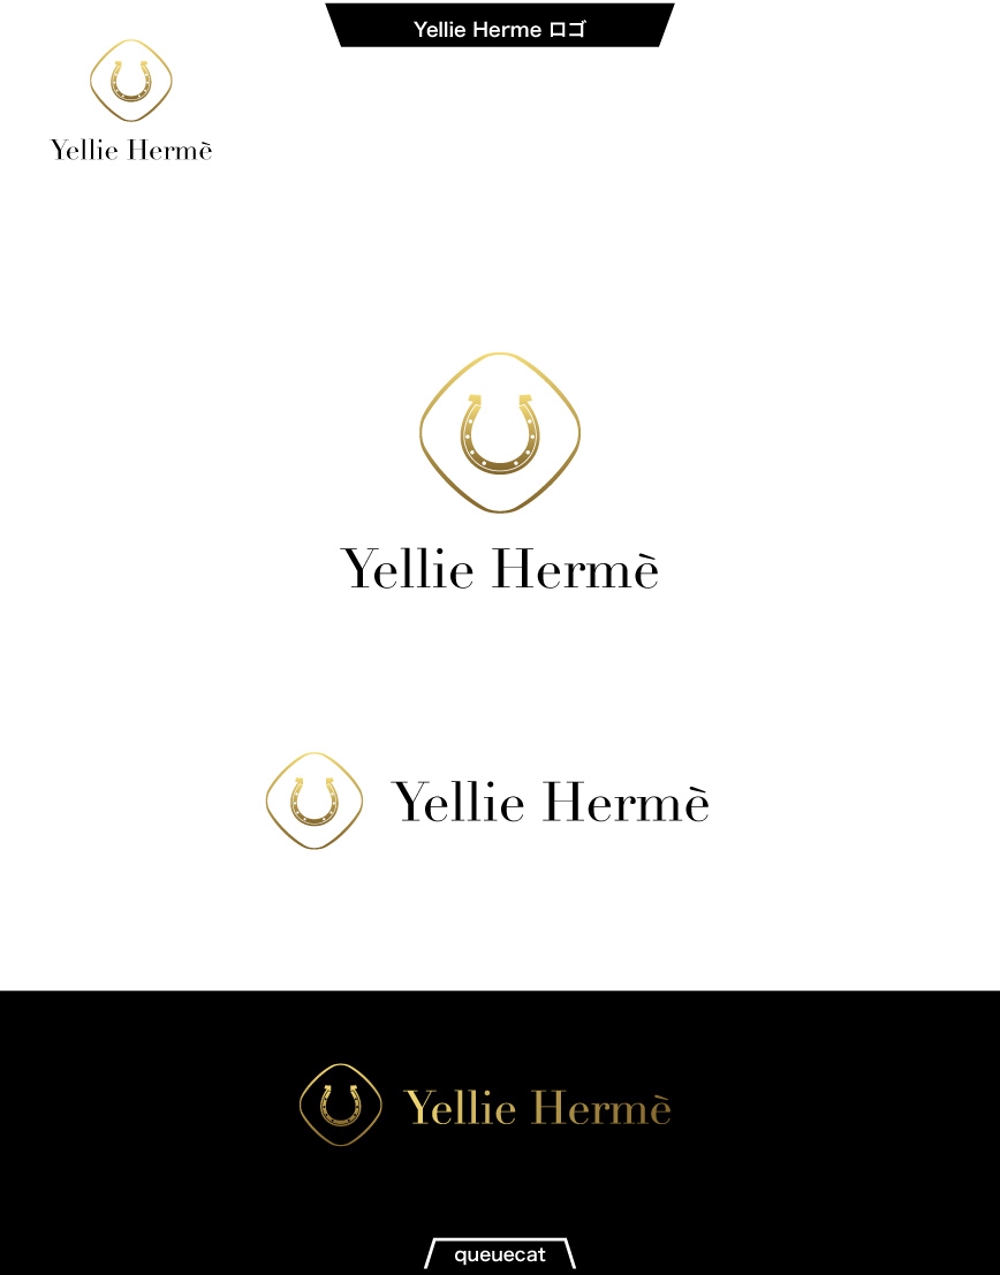 Yellie Herme2_1.jpg